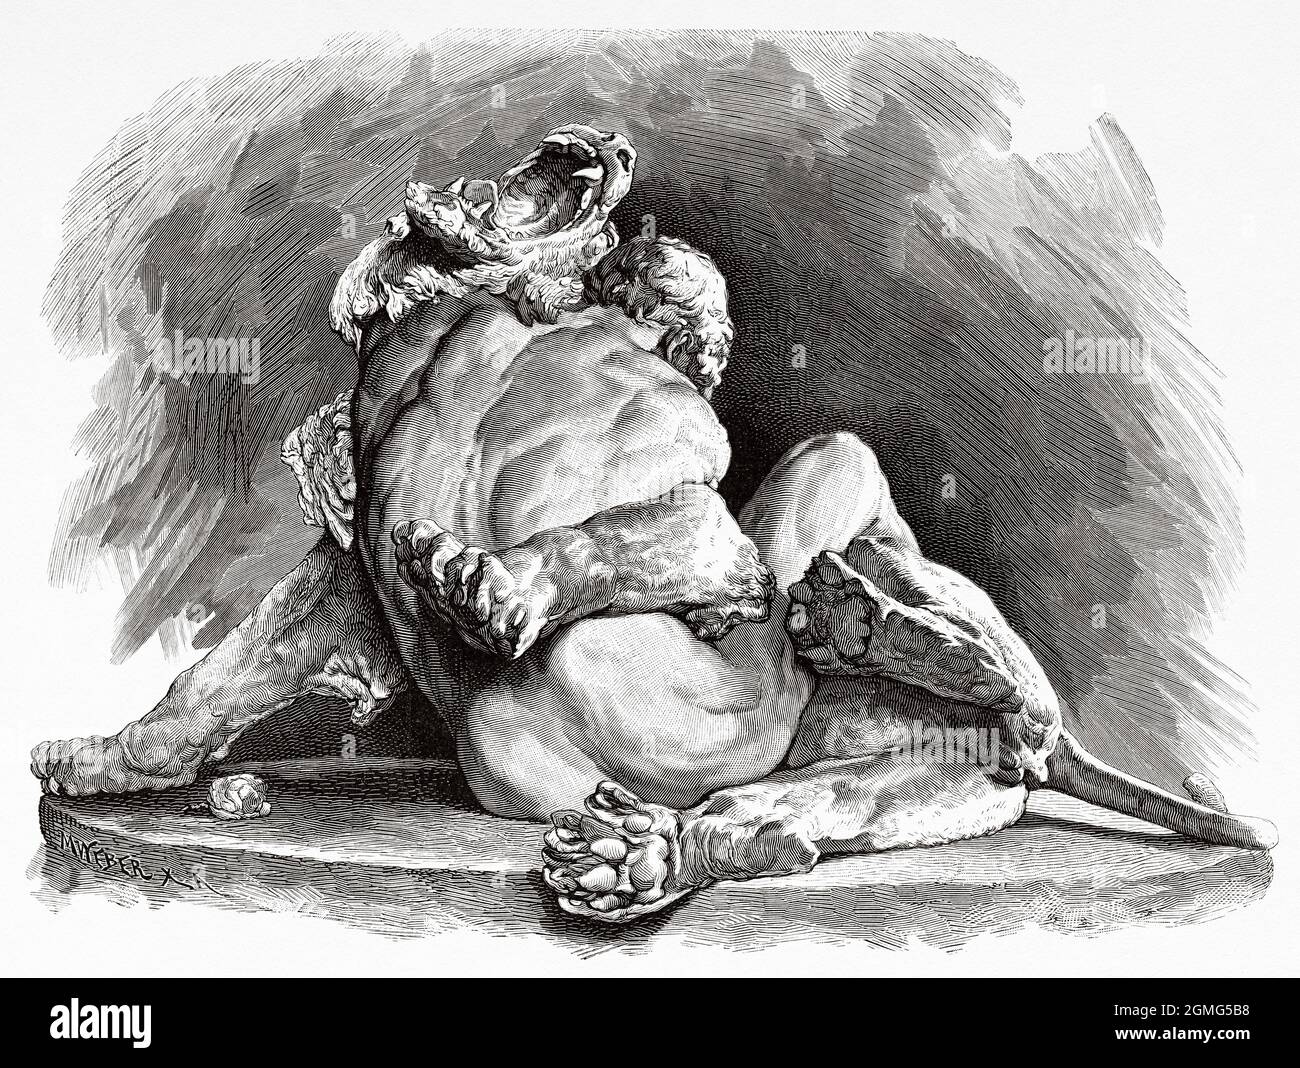 Sculpture d'un esclave allemand combattant un lion dans le cirque de Rome, bronze par M Klein. Ancienne illustration gravée du XIXe siècle de la Ilustración Artística 1882 Banque D'Images